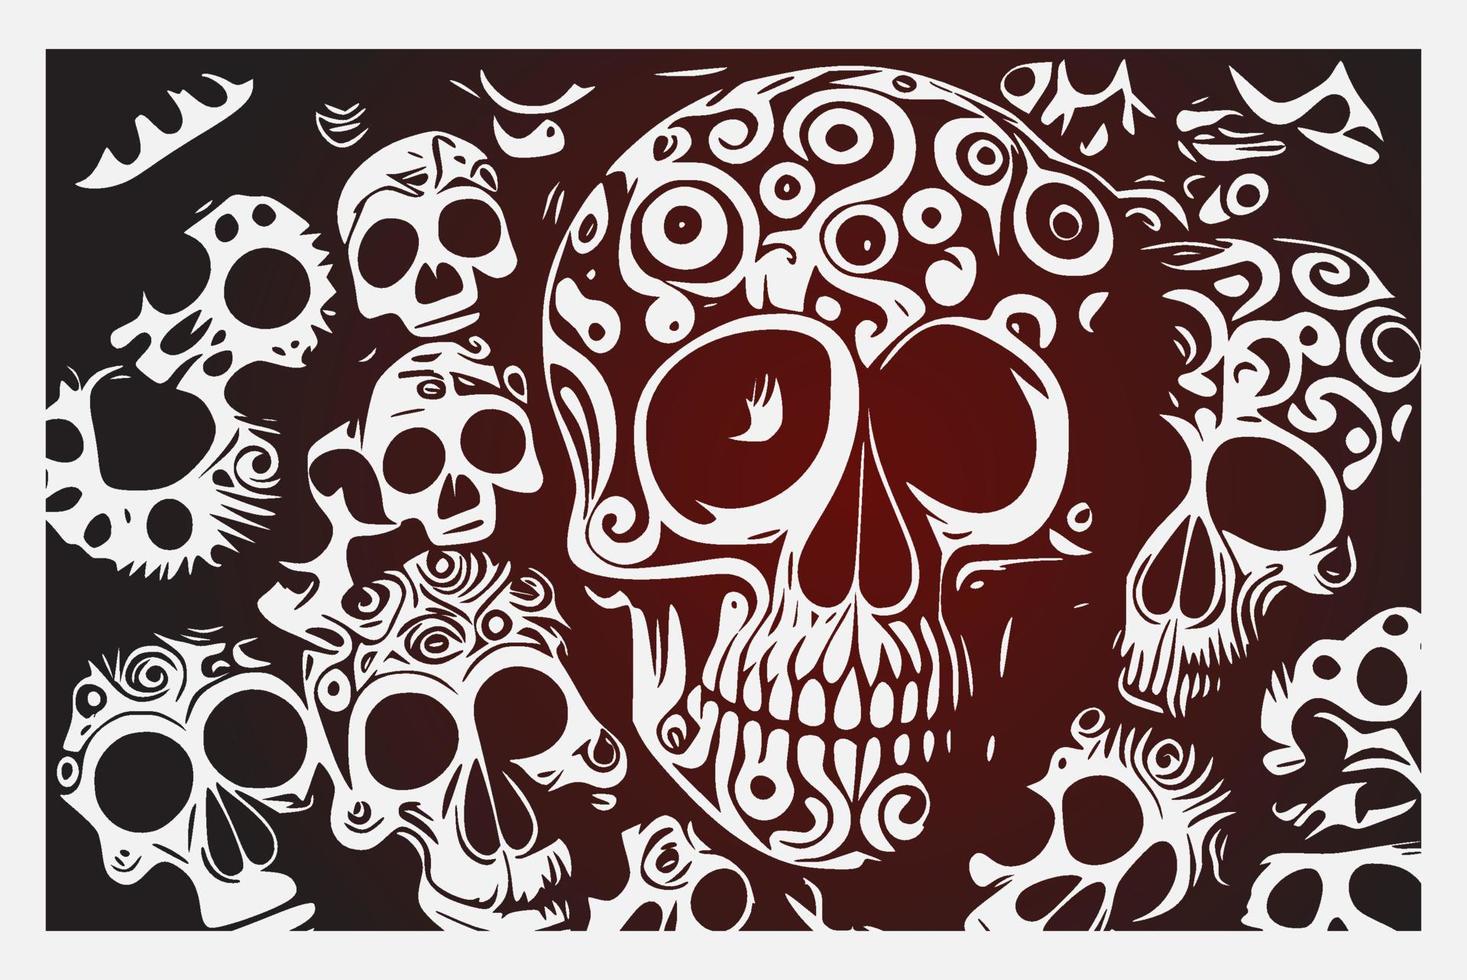 fondo de calaveras vectoriales. ilustración vectorial con varios cráneos en diferentes ángulos nadando en un mar de rosas estilo tatuaje. gran colección de elementos agrupados individualmente. vector